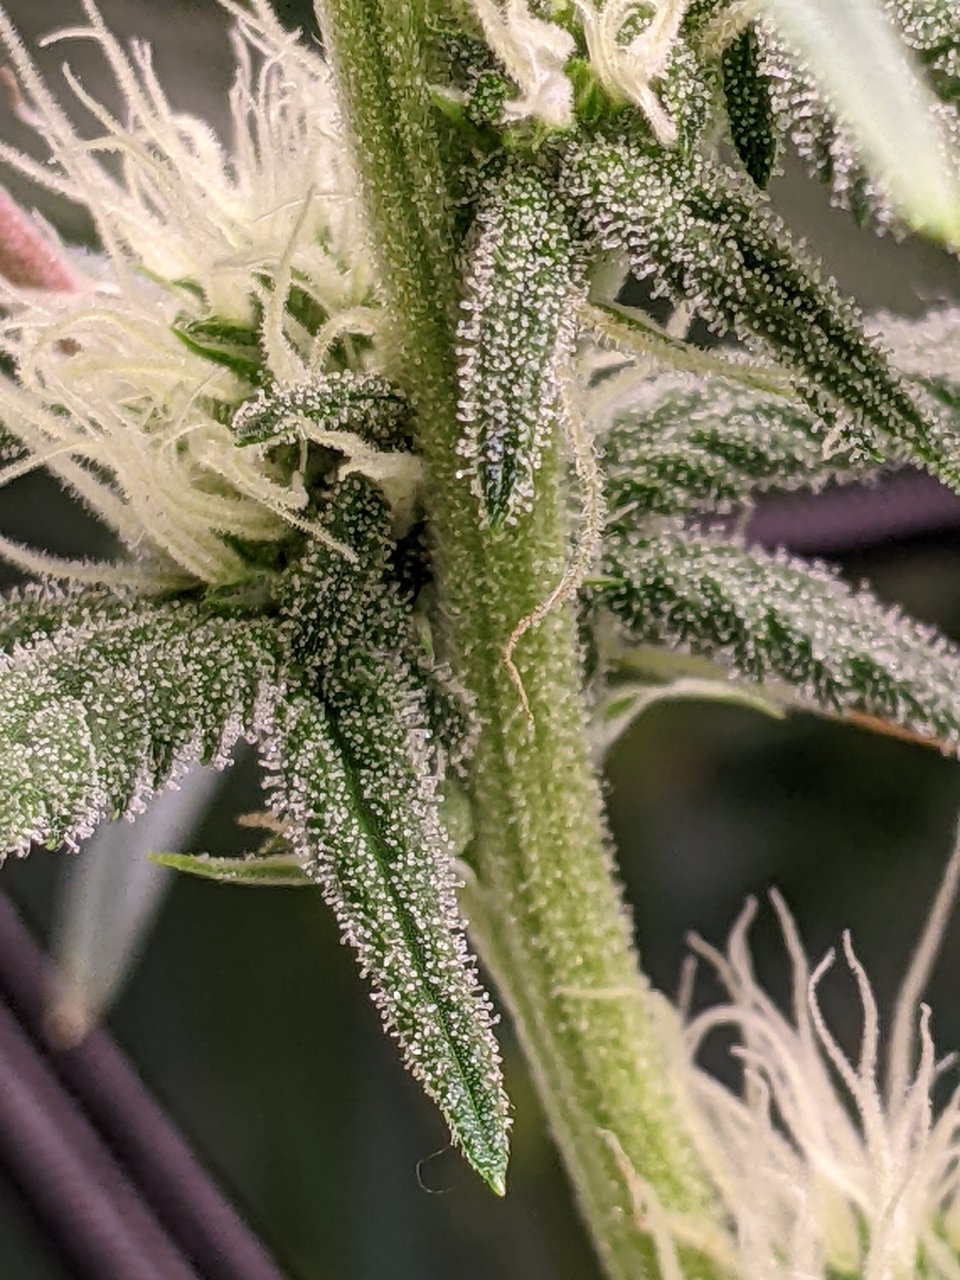 Grandmommy Purple - Herbies - Week 3 flower